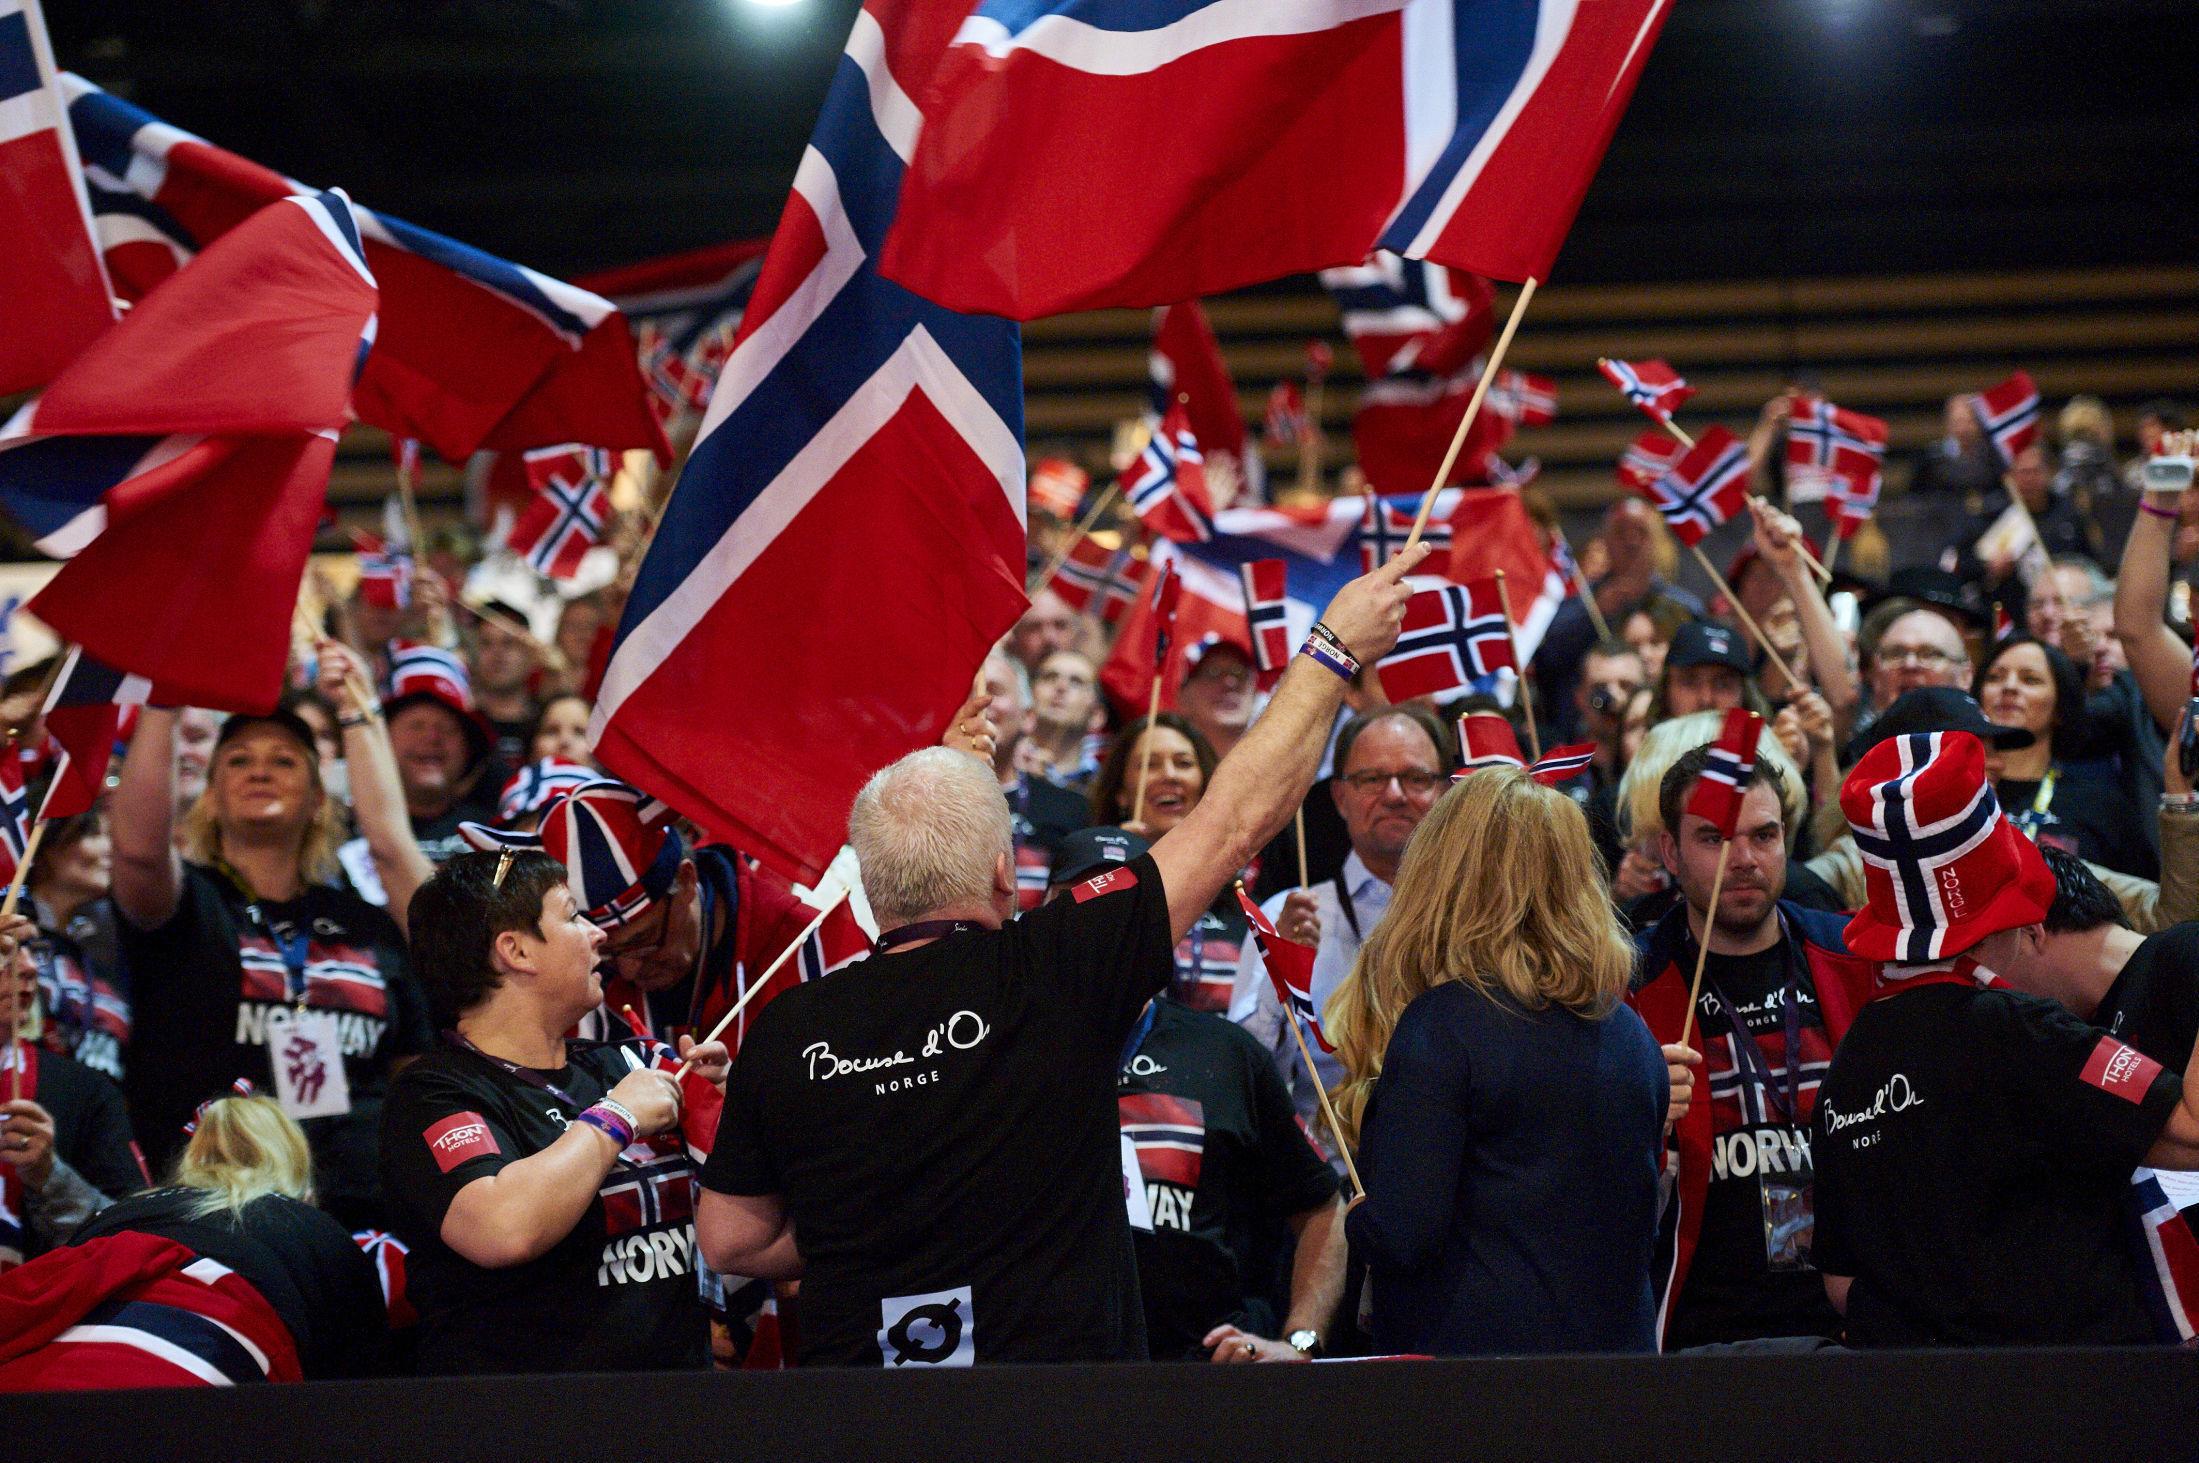 HEIA NORGE: Norge var sterkt representert også på tribunen under årets Bocuse d'Or. Foto: Le Fotographe.